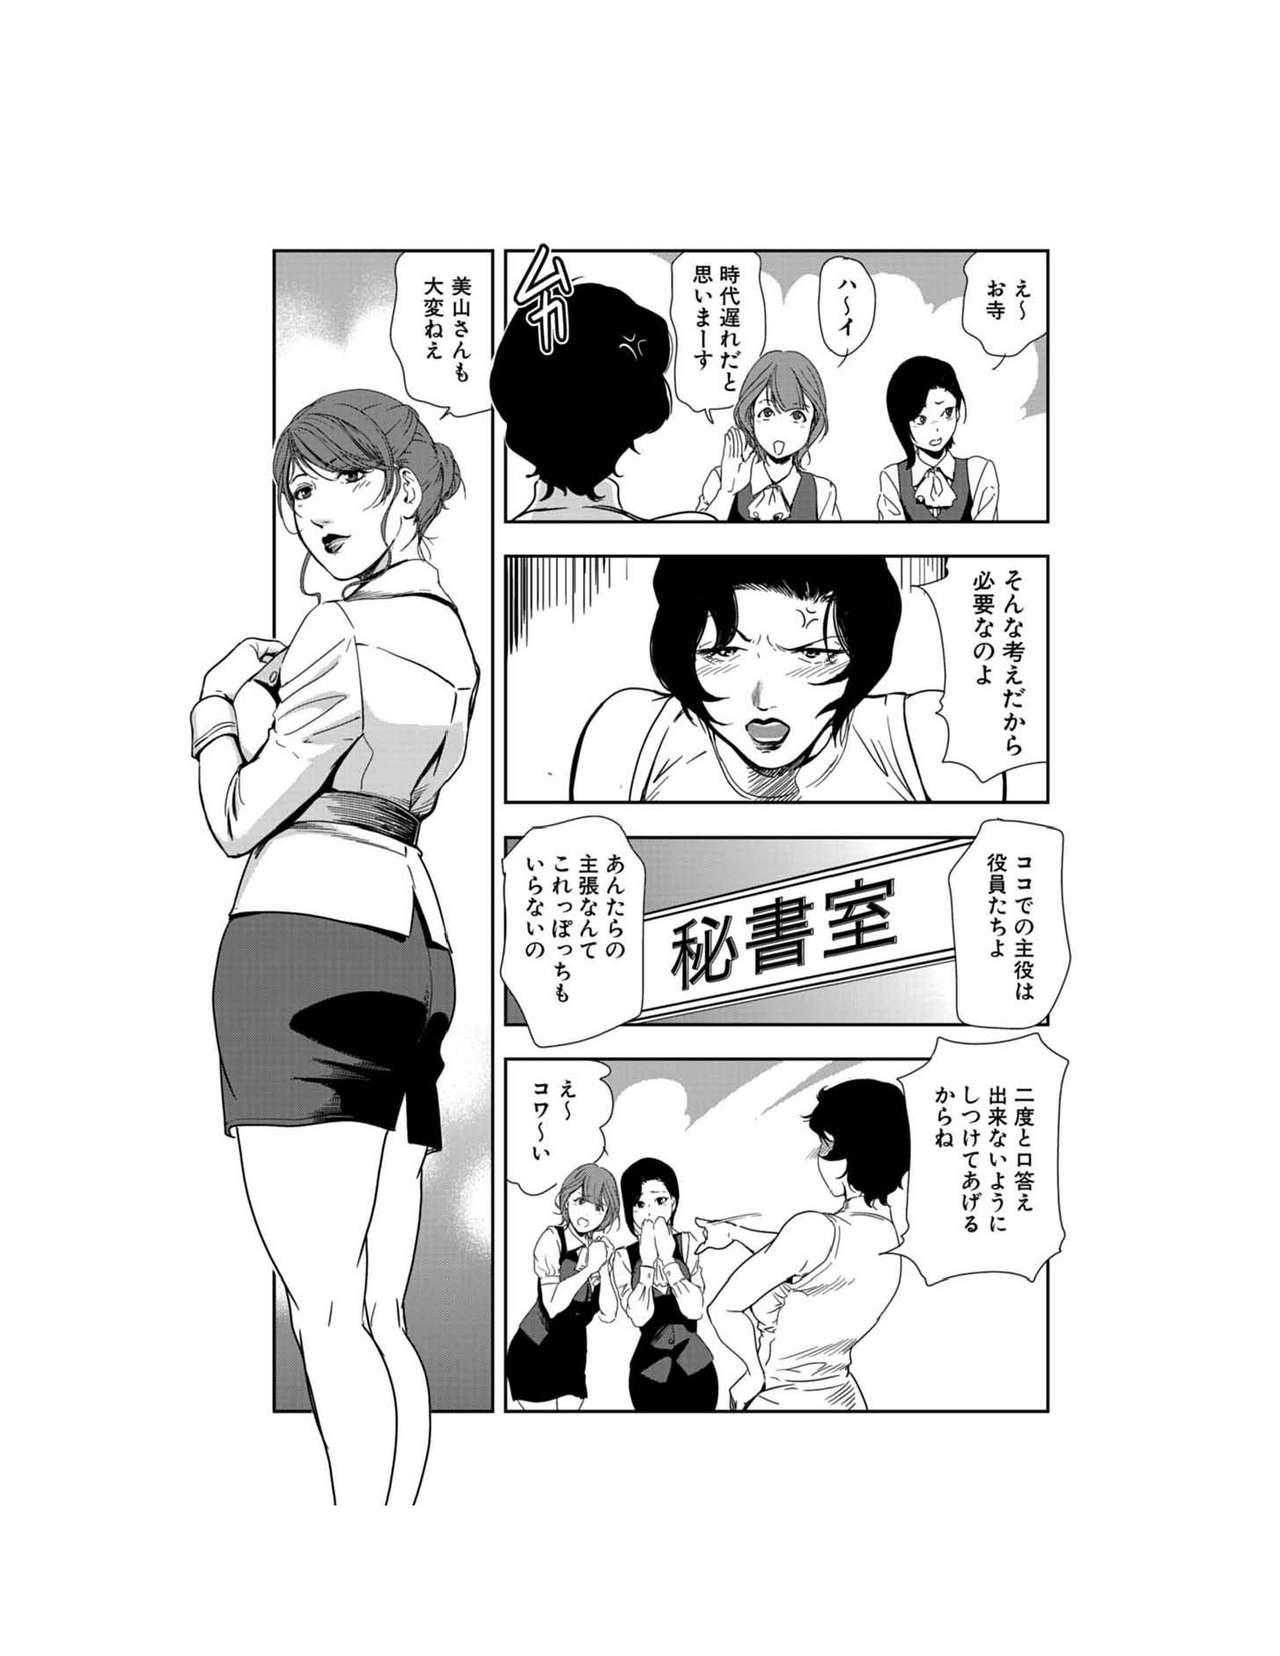 Cornudo Nikuhisyo Yukiko 23 Pareja - Page 4